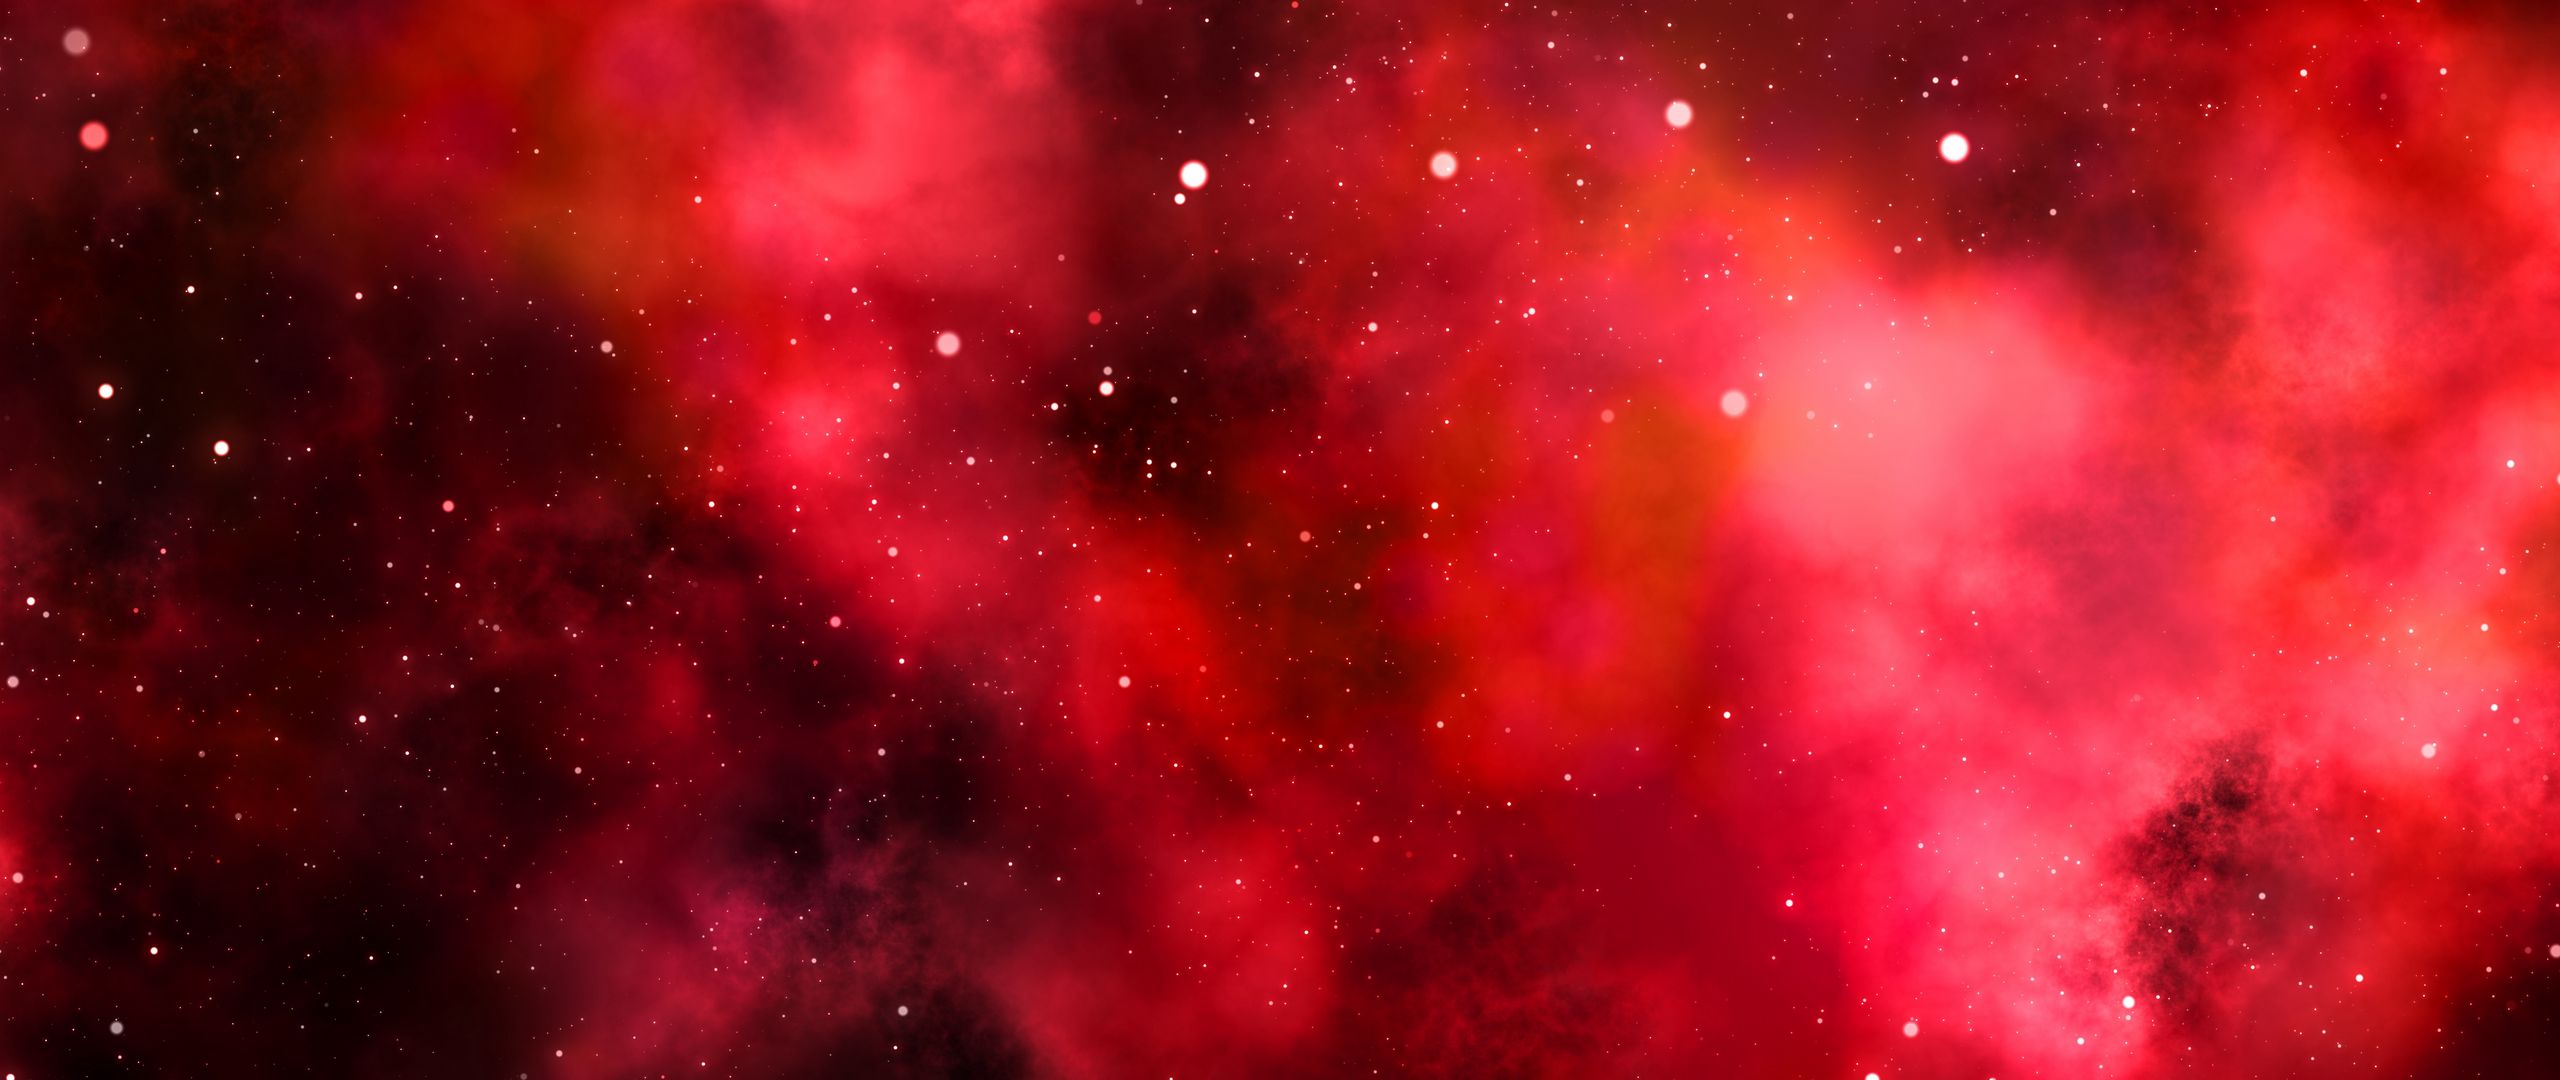 galaxy s7 wallpaper hd 1080p,nebulosa,rosso,oggetto astronomico,rosa,cielo